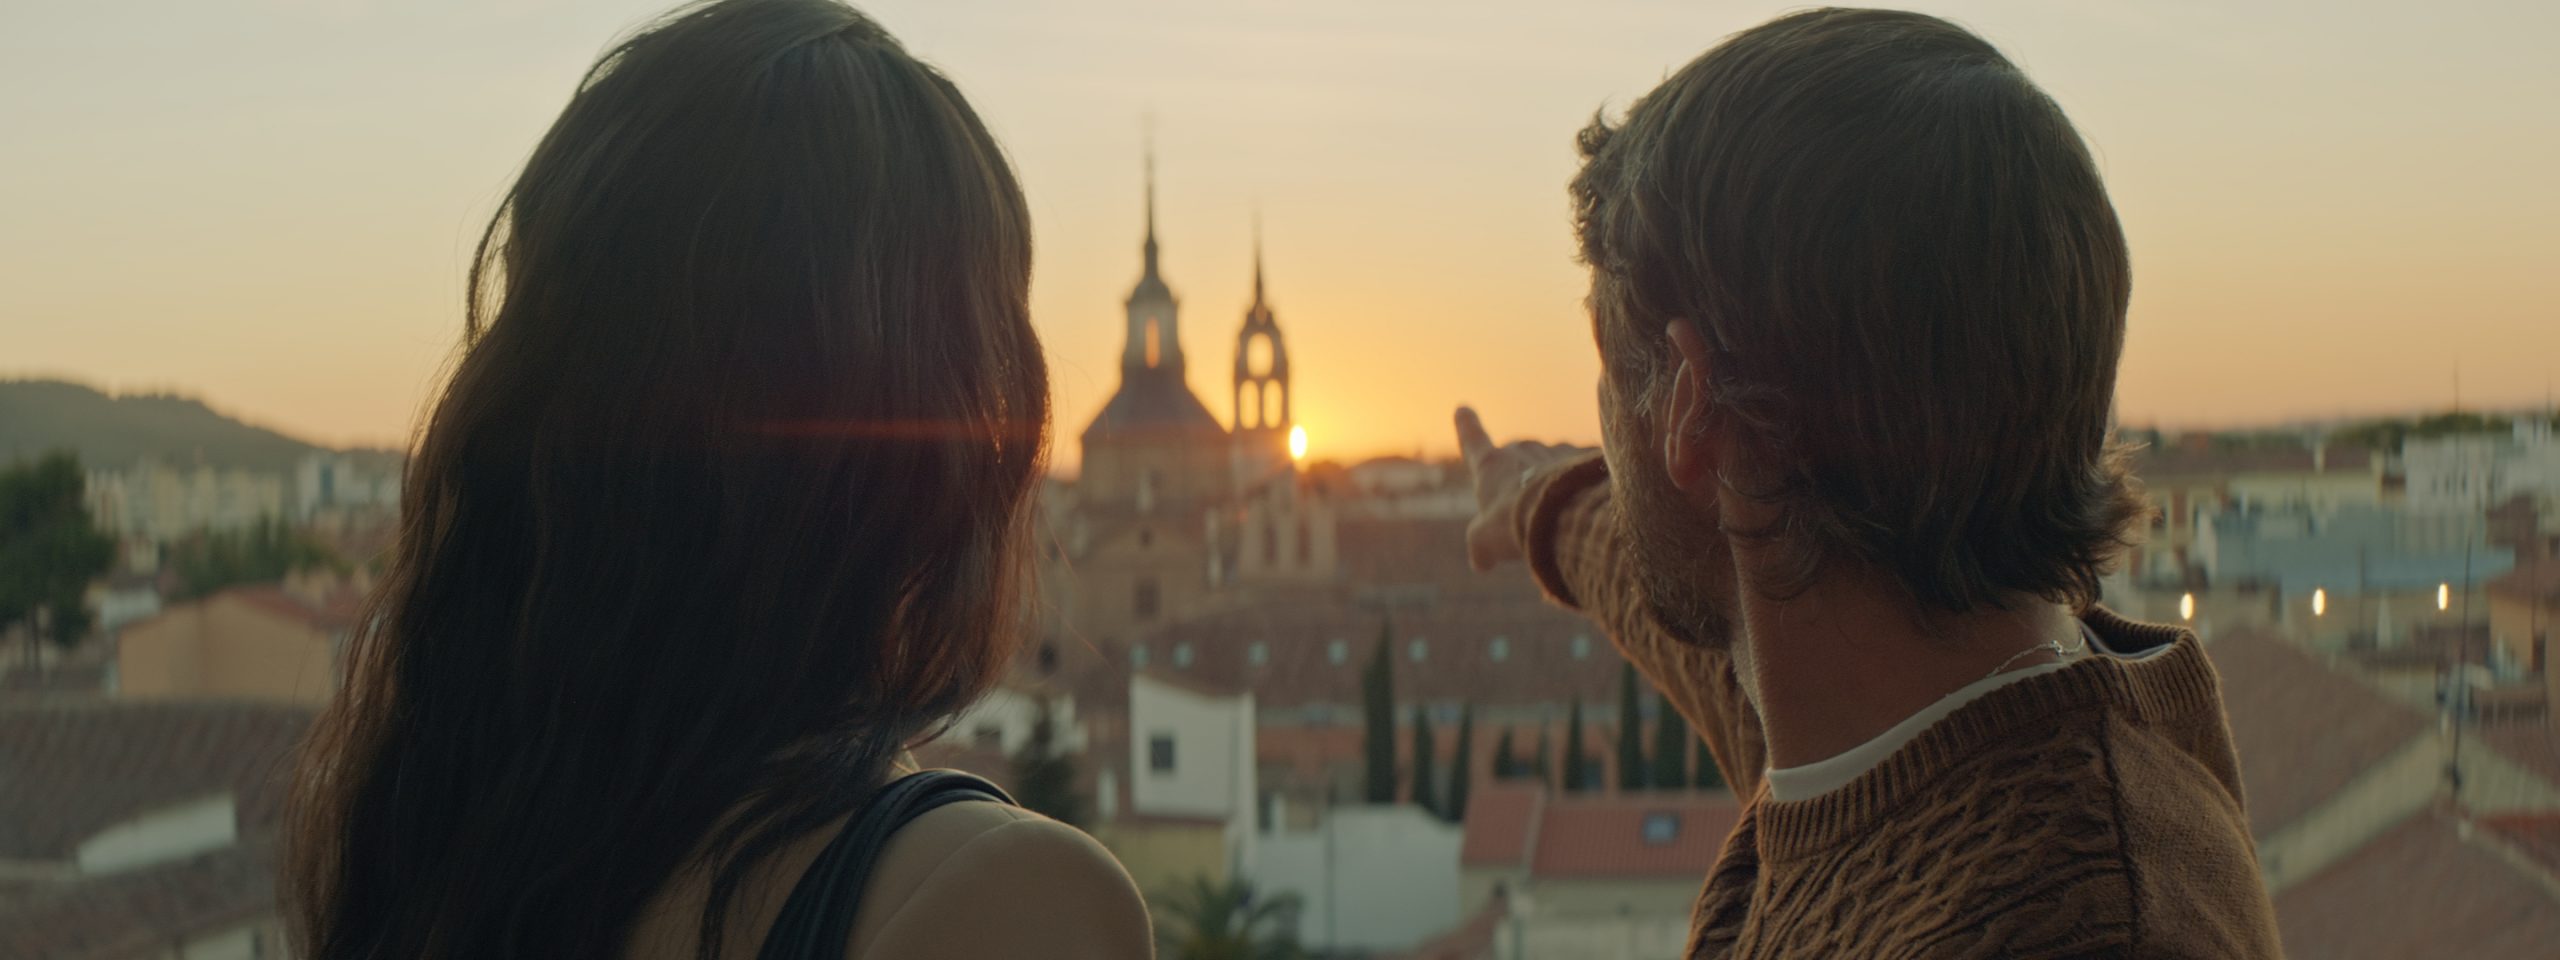 Déjate Llevar, la nueva película promocional de Alcalá de Henares